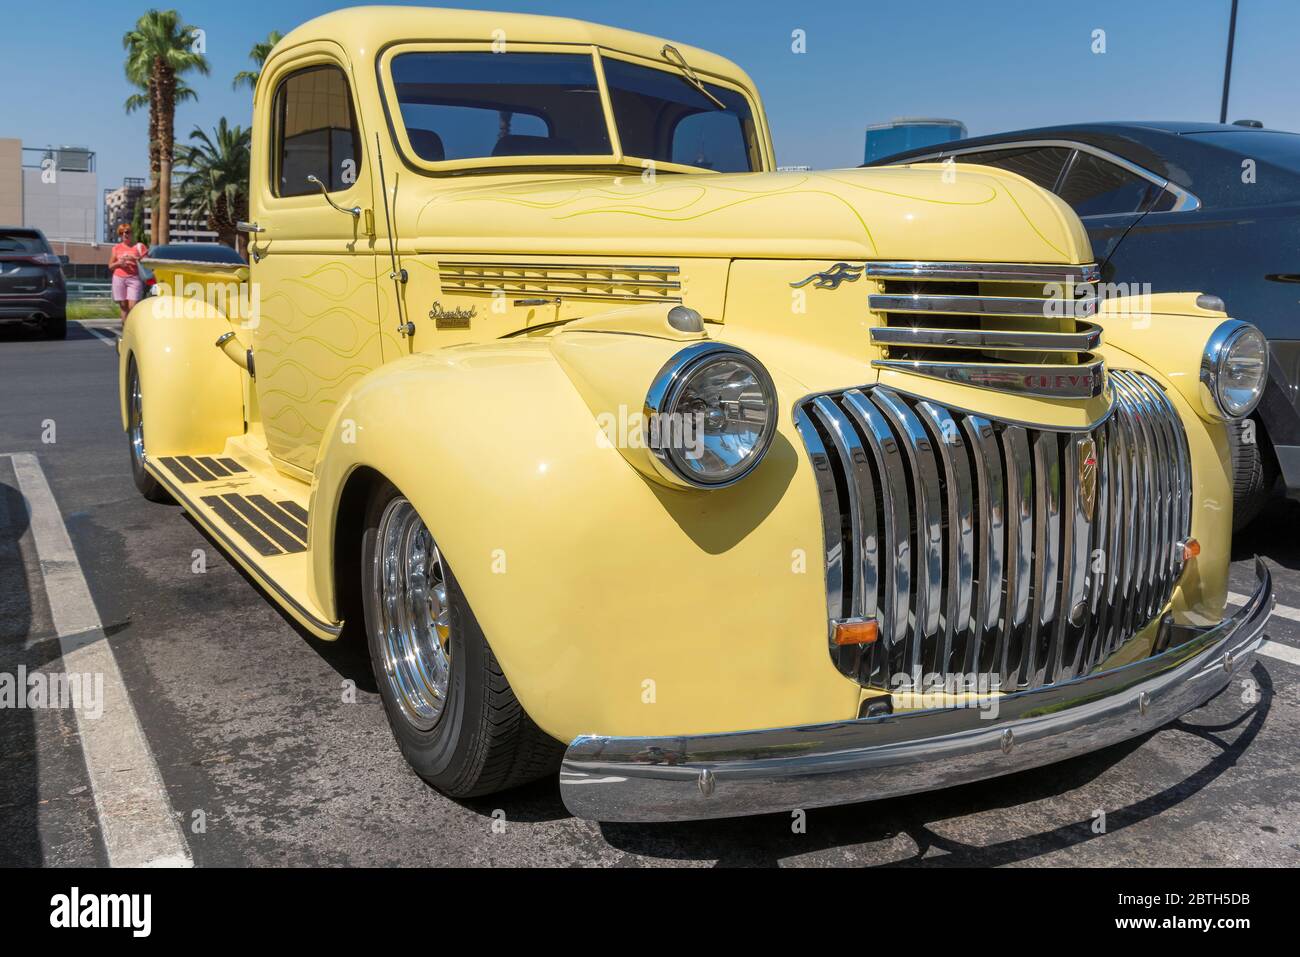 Viejo Chevrolet amarillo americano. Foto de stock